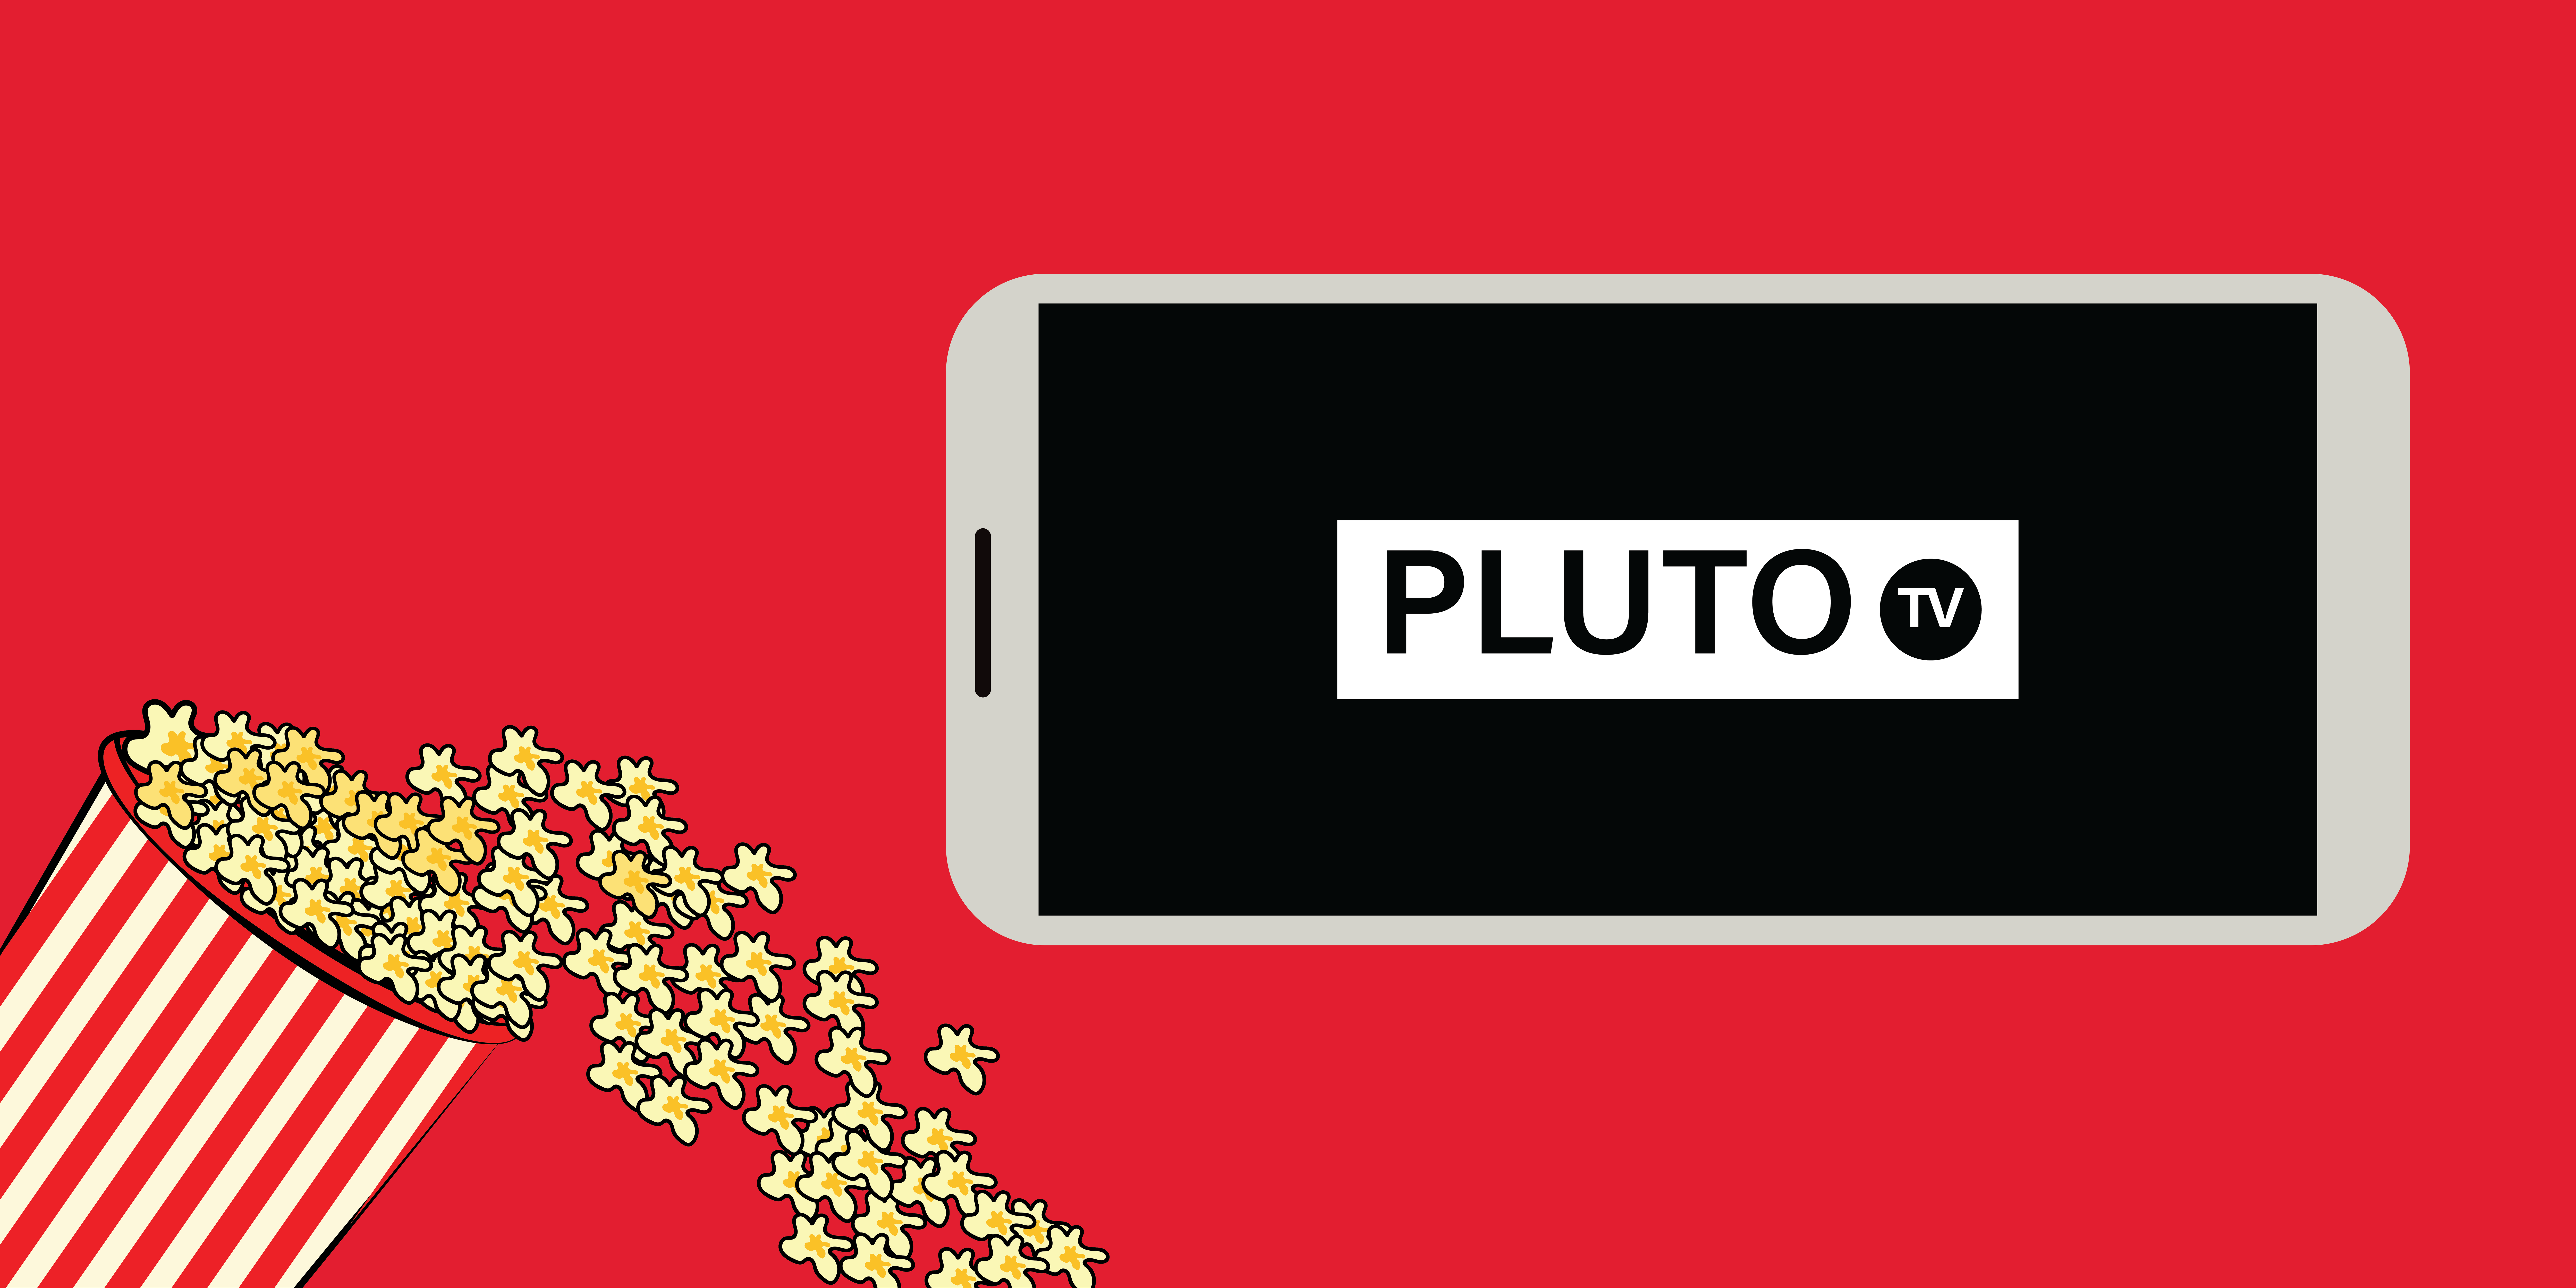 Pluto TV logo illustration